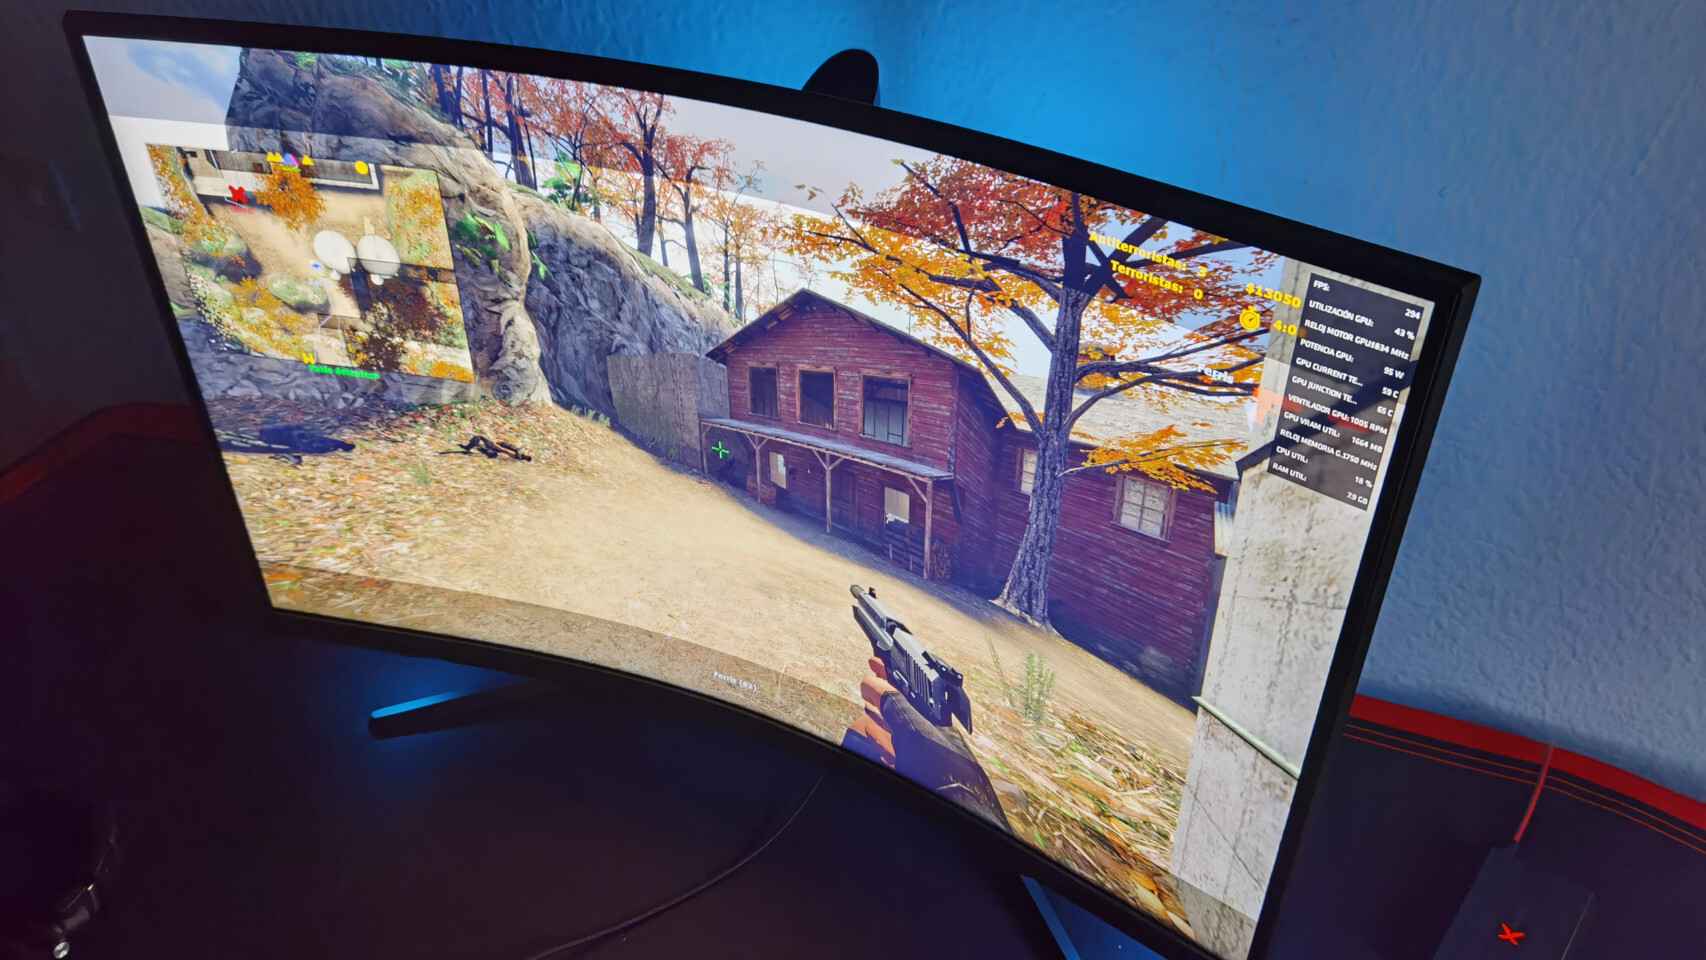 El Samsung Odyssey G7 se comporta bien en juegos para esports como Counter-Strike